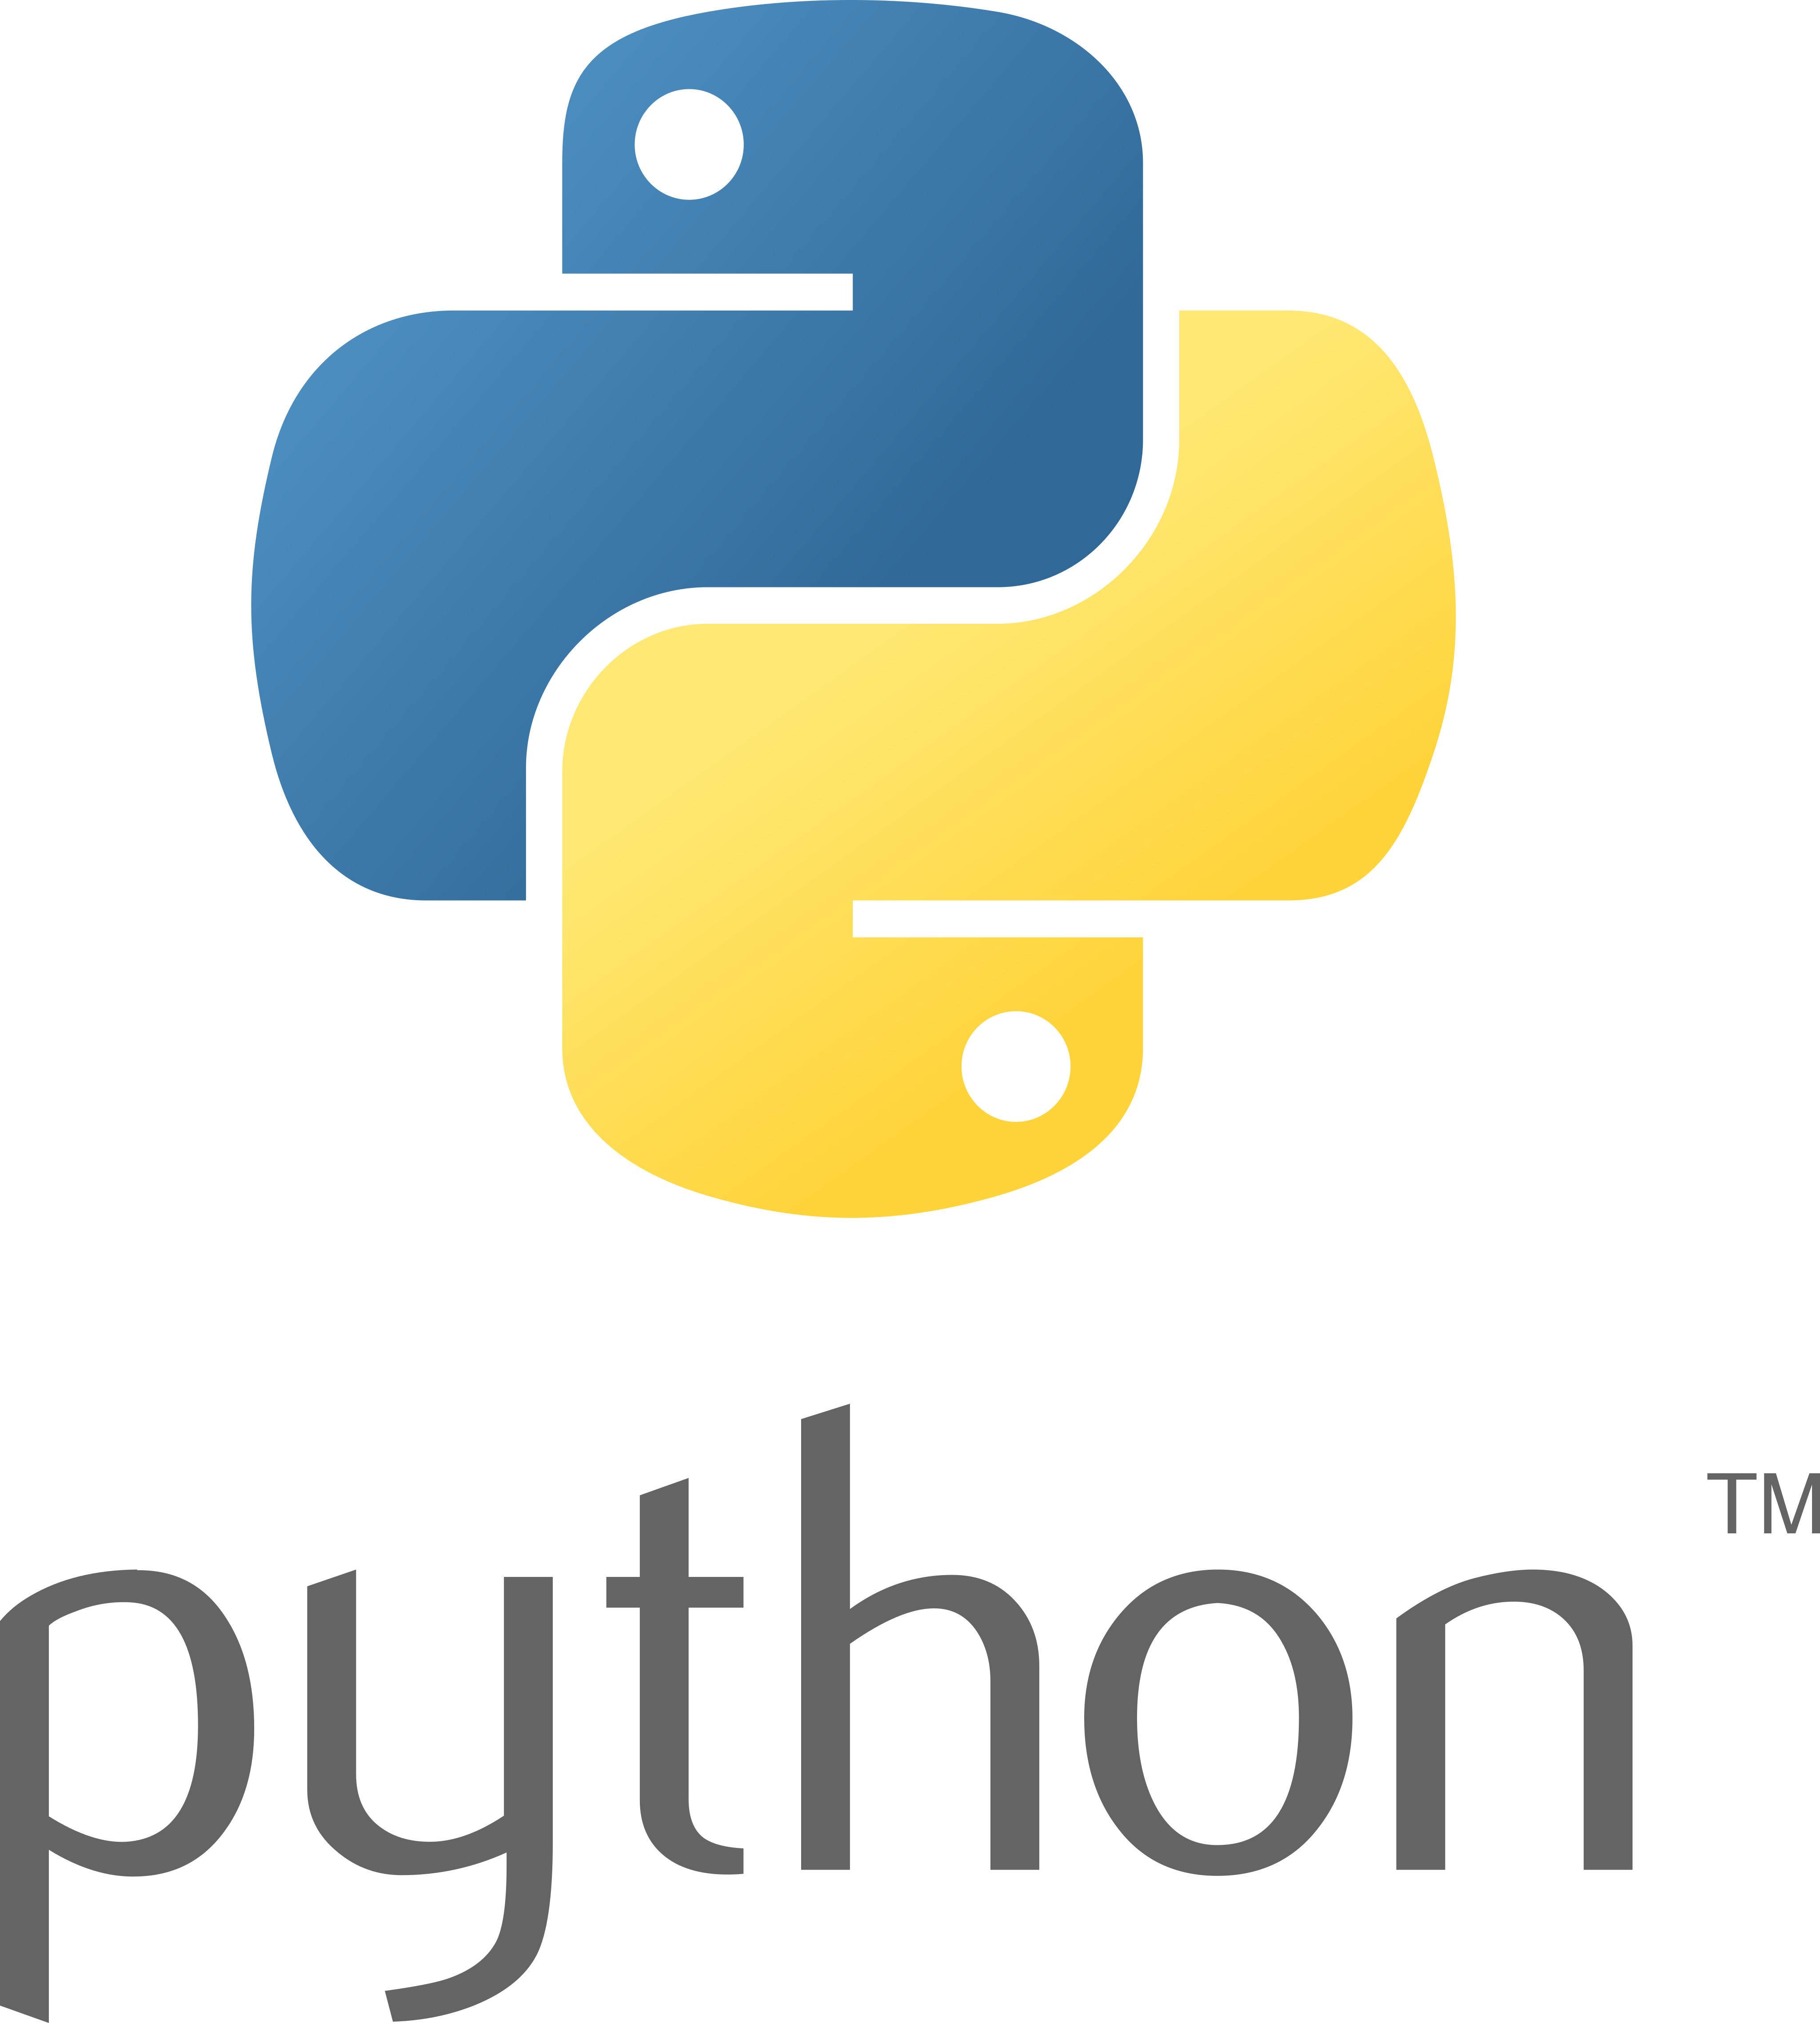 The Python Logo | Python Soft